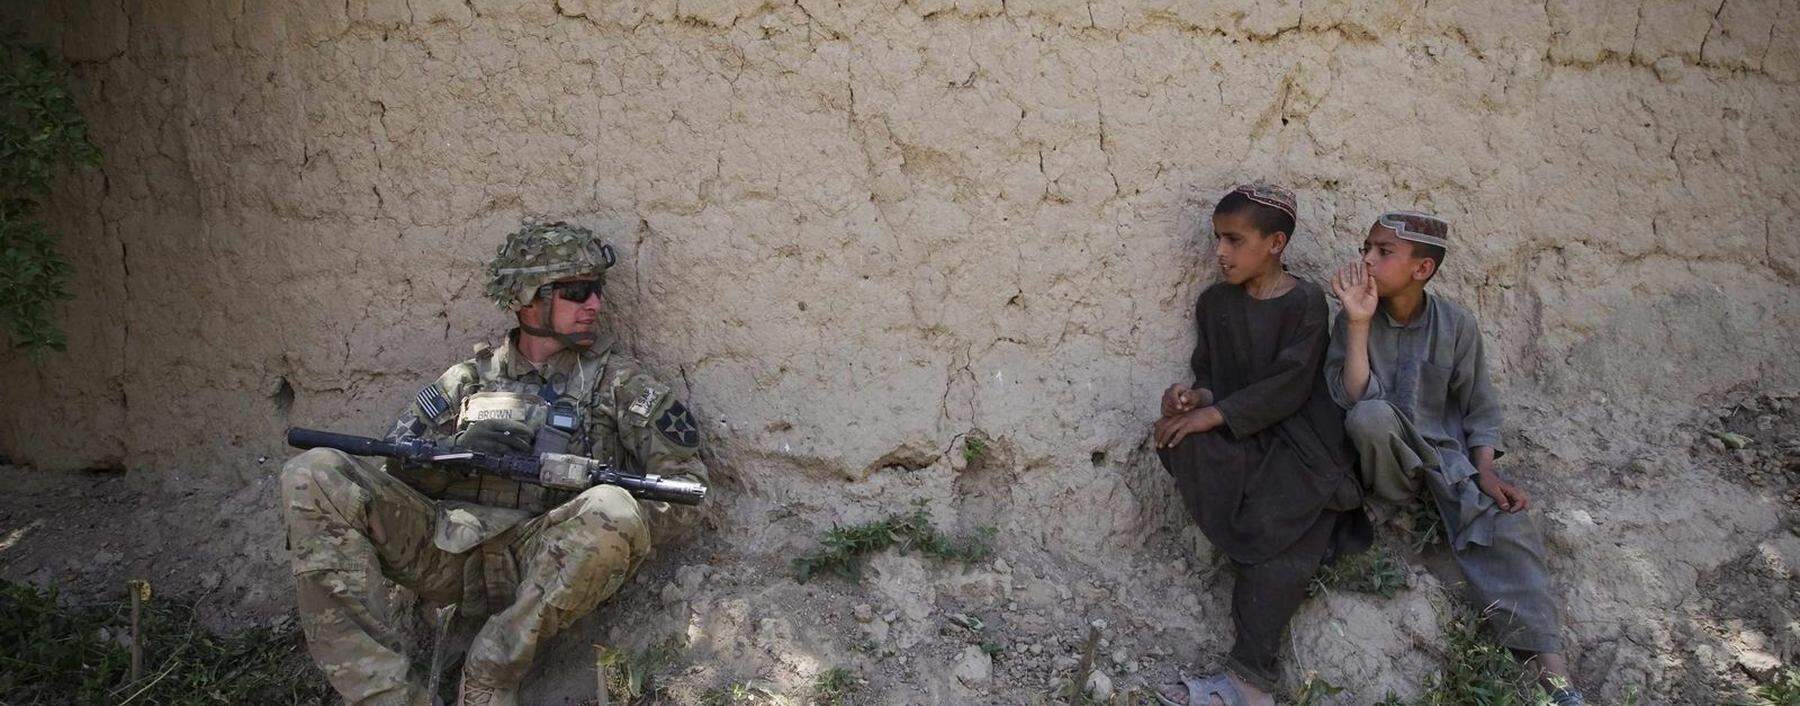 Vorsichtiges Beäugen. Ein US-Soldat und afghanische Kinder in Kandahar 2012. 